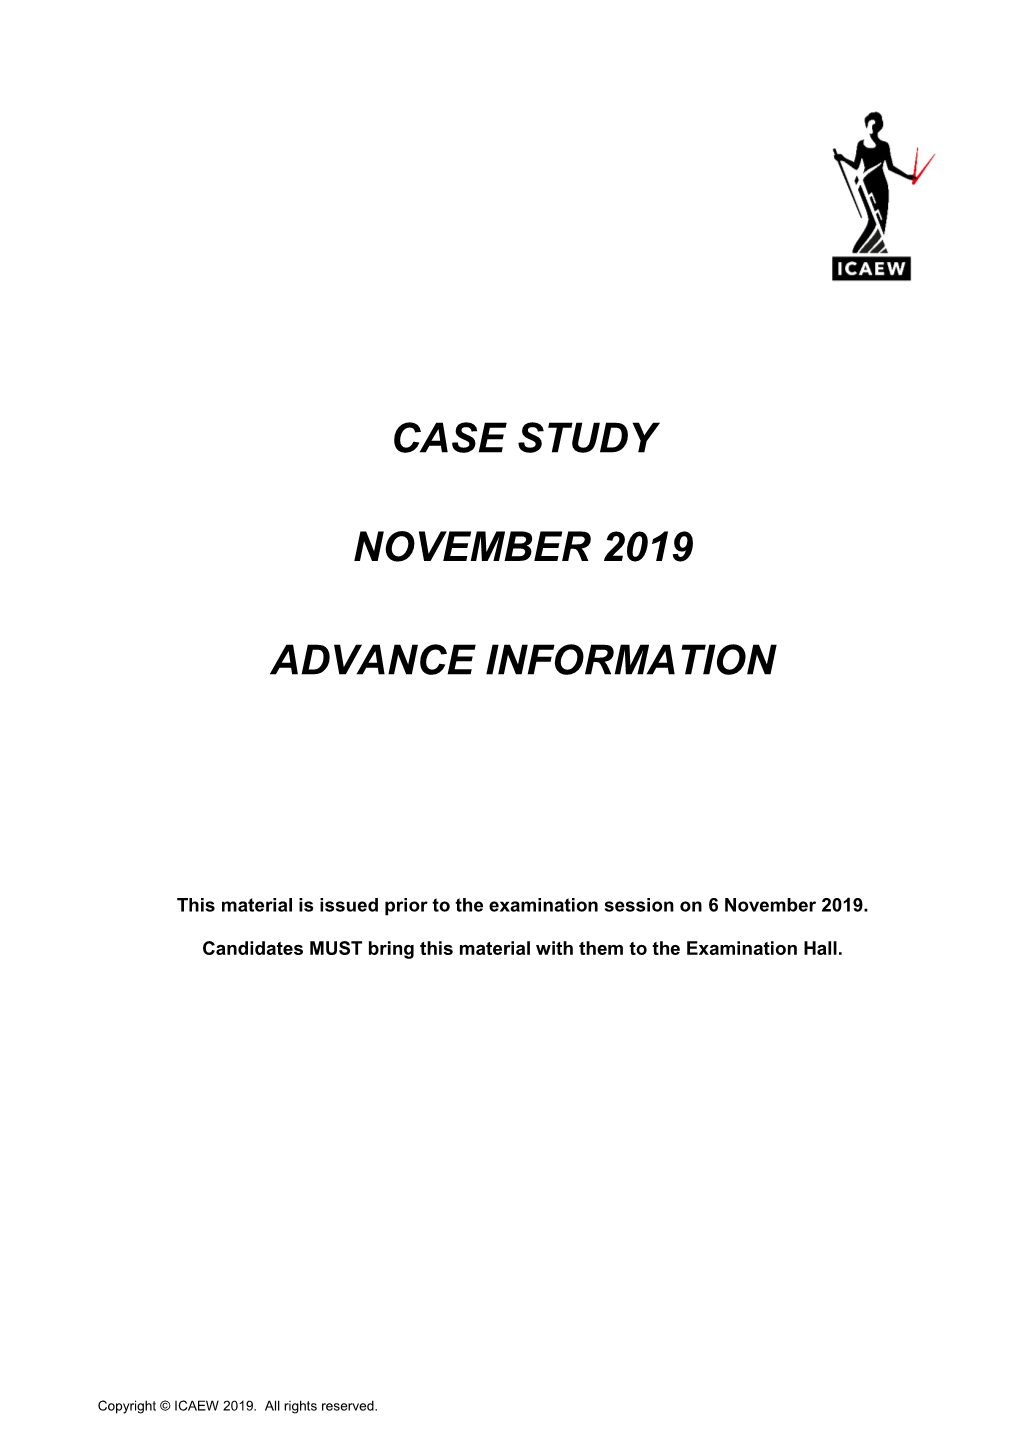 Case Study November 2019 Advance Information